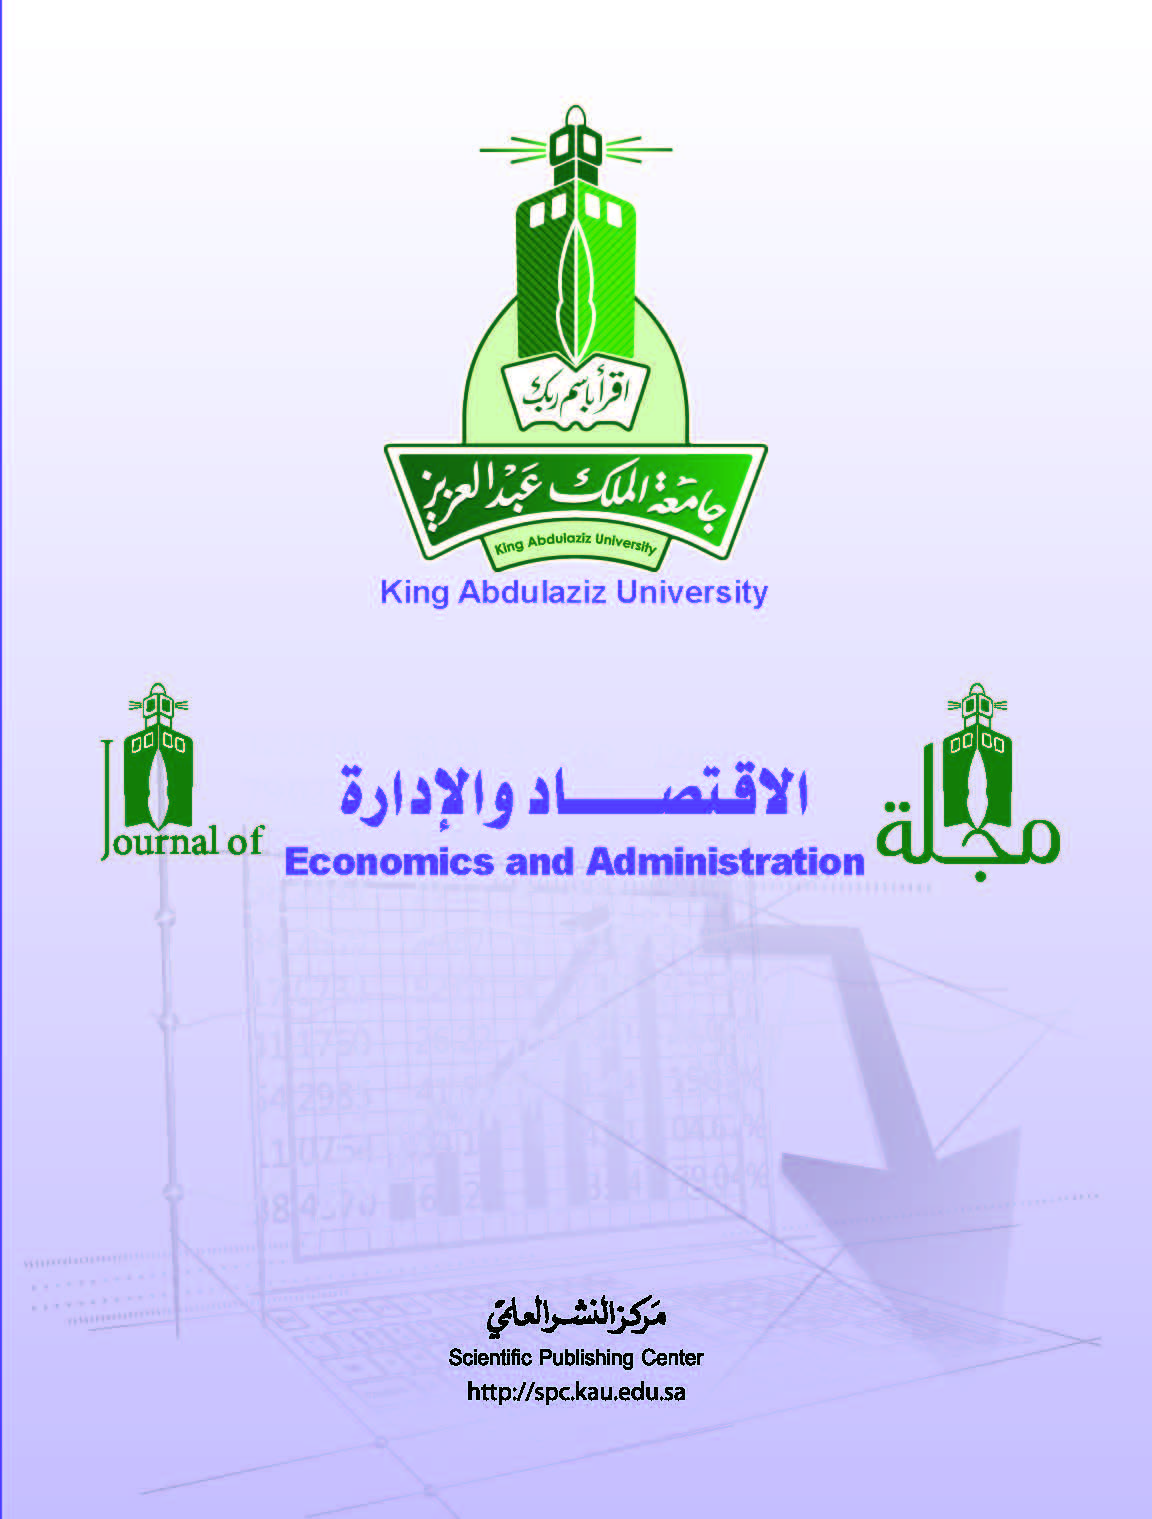 مركز النشر العلمي مجلة جامعة الملك عبدالعزيز